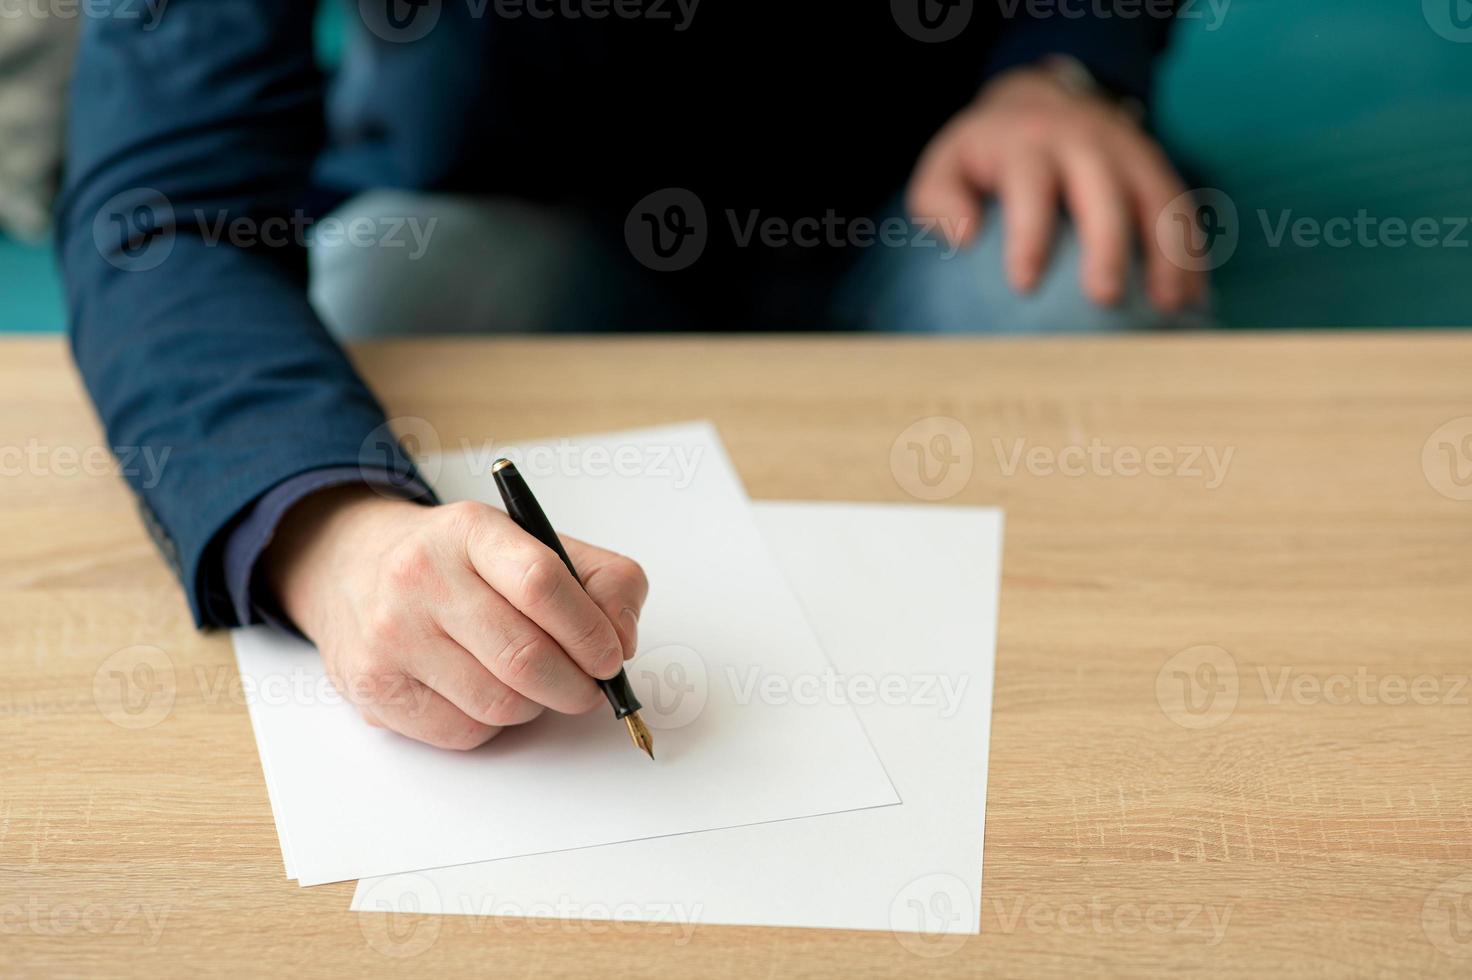 el hombre de negocios en la oficina escribe una carta o firma un documento en un papel blanco con una pluma estilográfica con punta. primer plano de las manos de un hombre de negocios en un traje foto